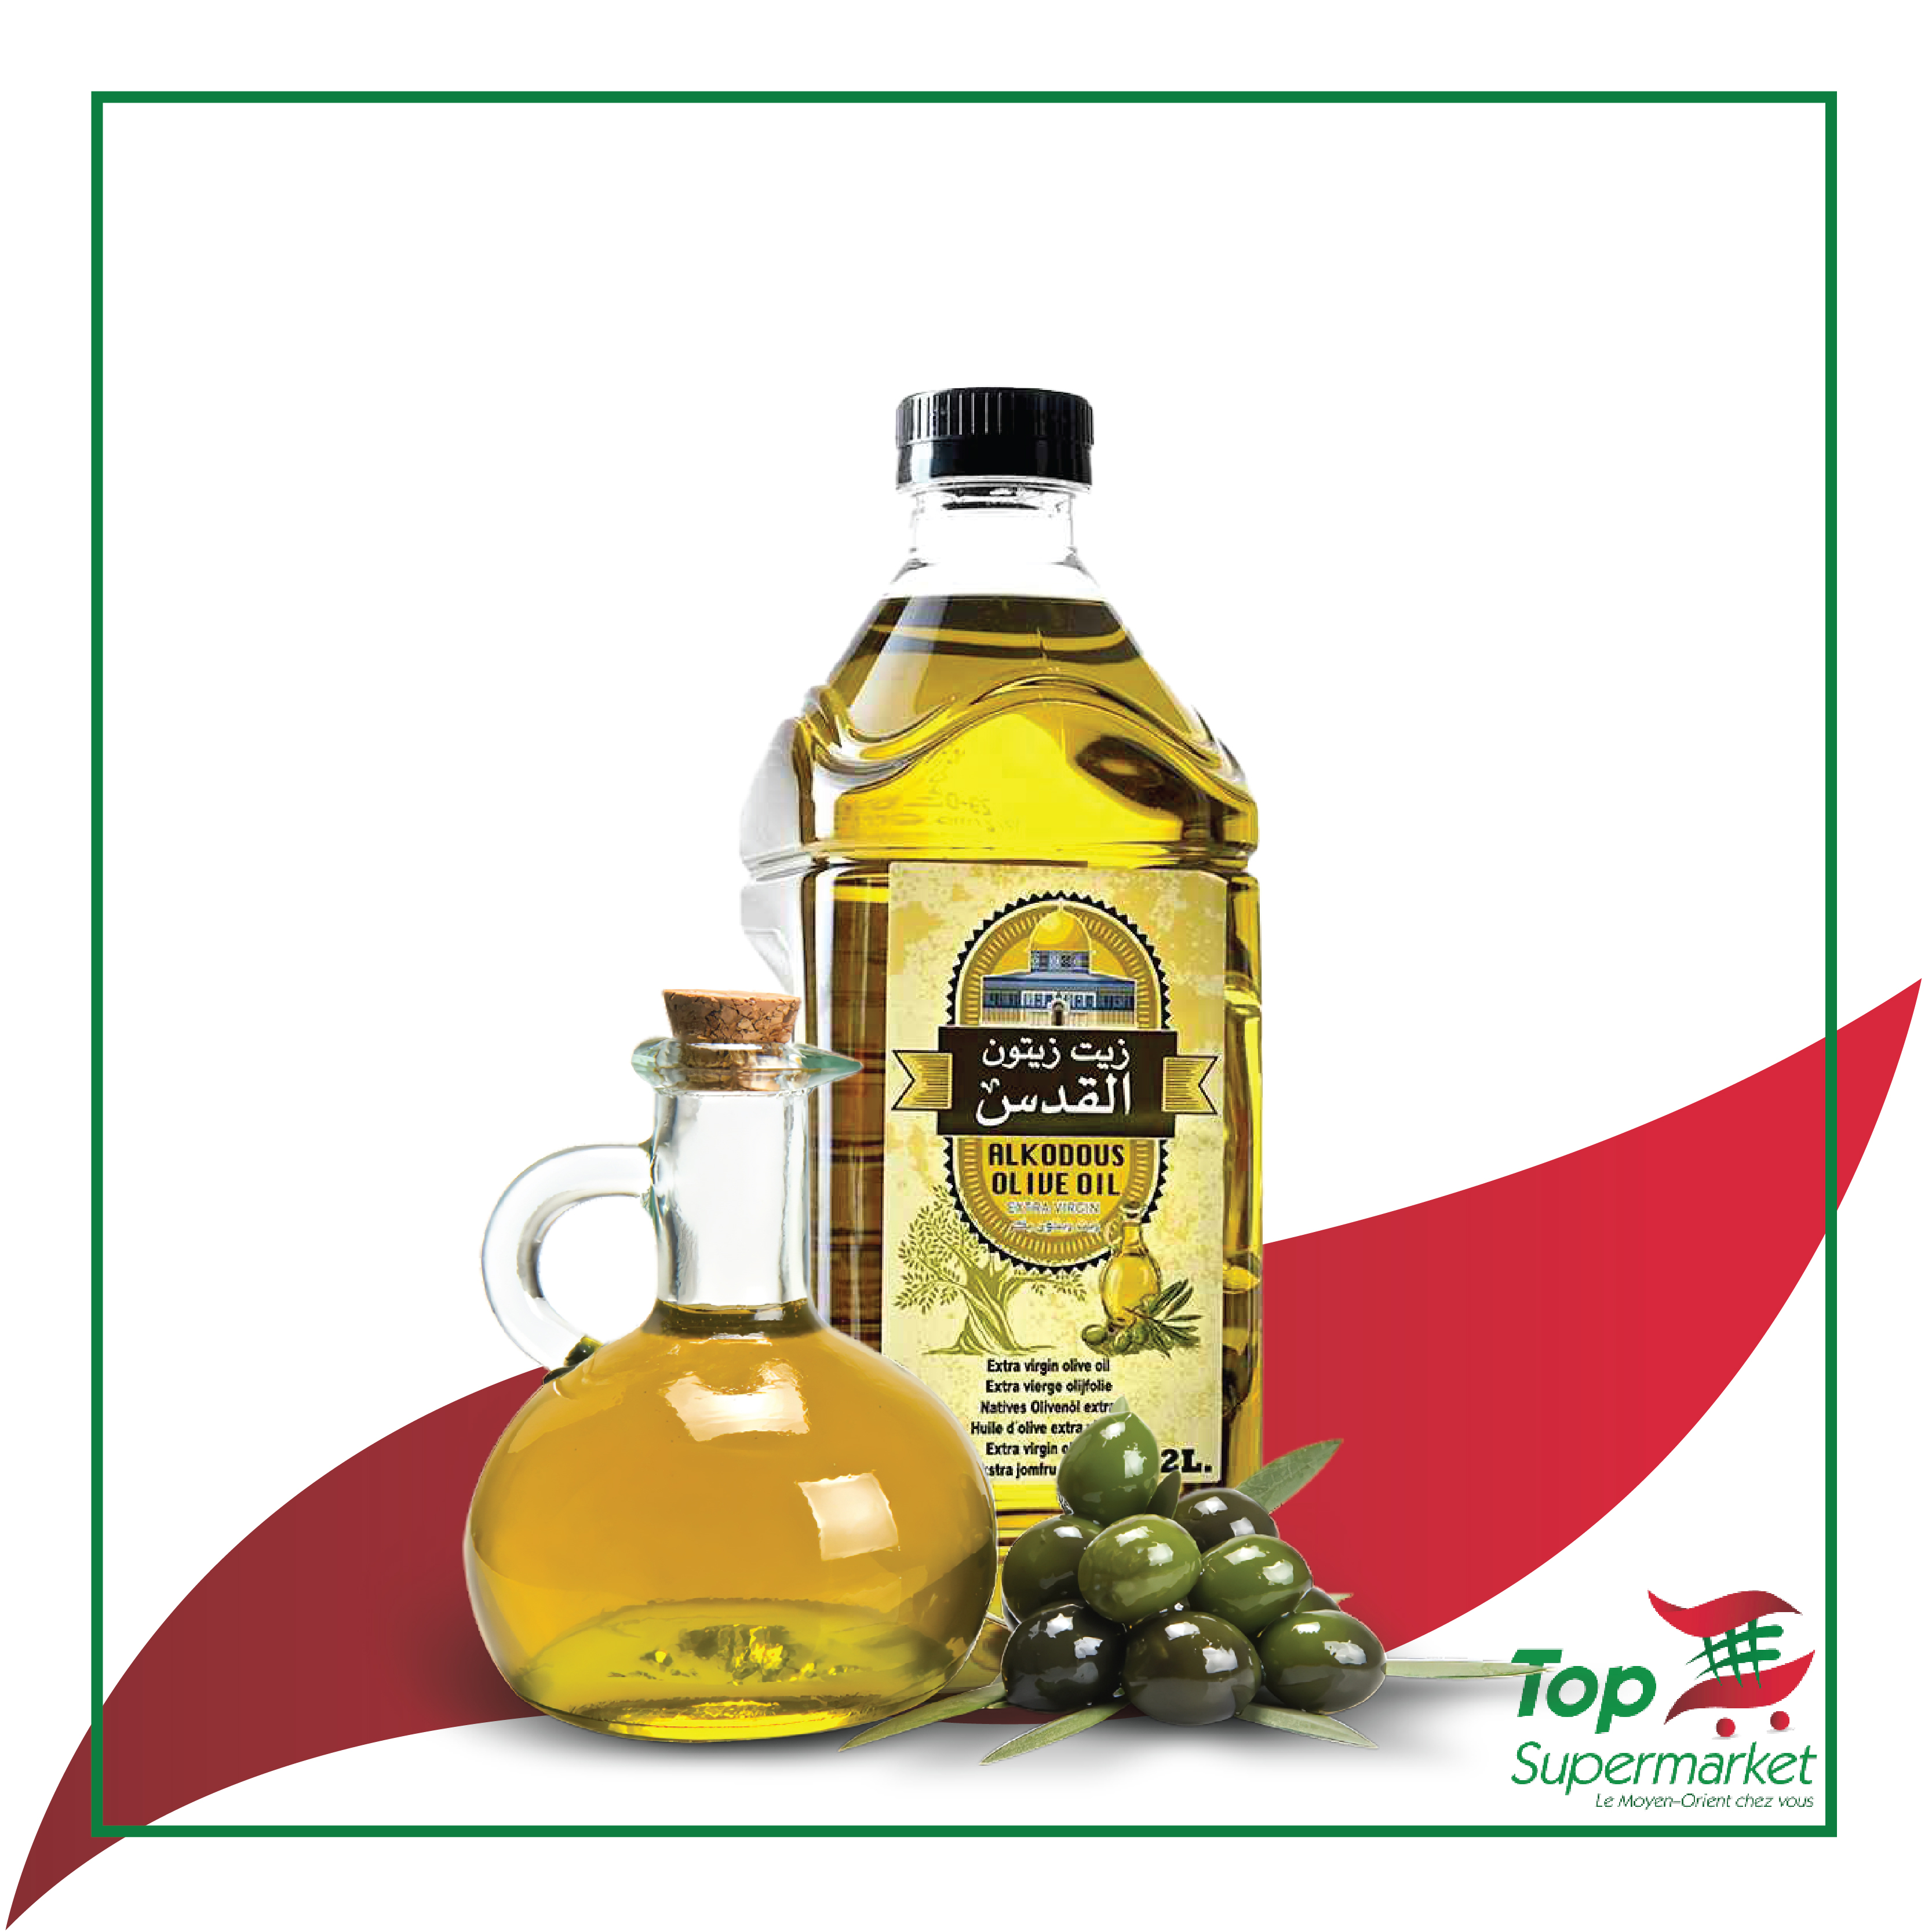 Al Kodous huile d'olive 2L